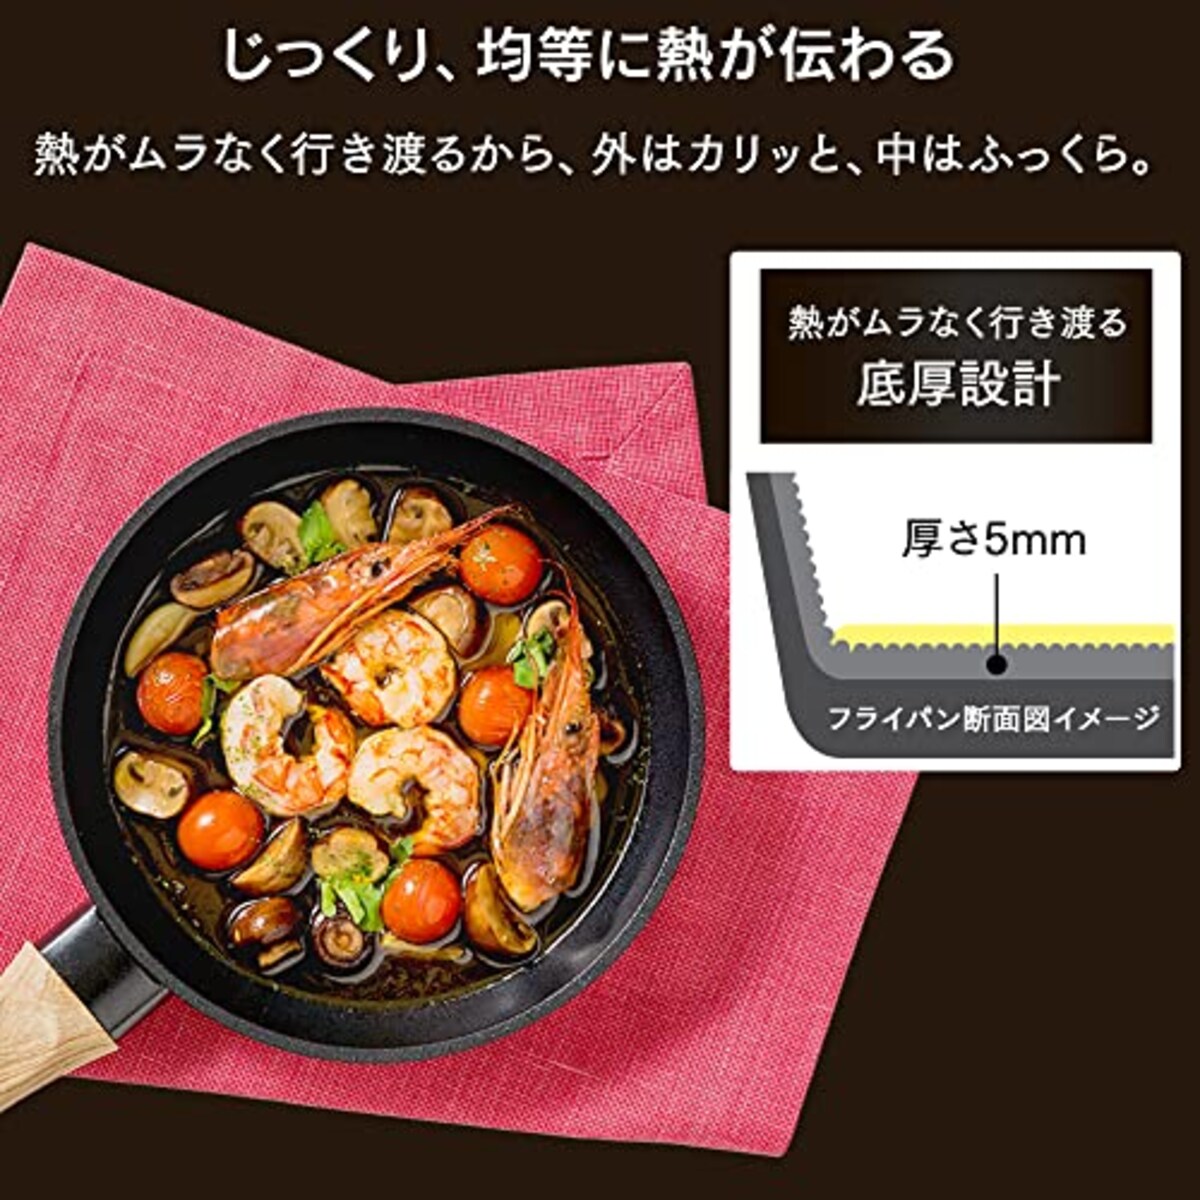  アイリスオーヤマ IH 対応 フライパン 20cm スキレットコートパン ブラック SKL-20IH画像6 